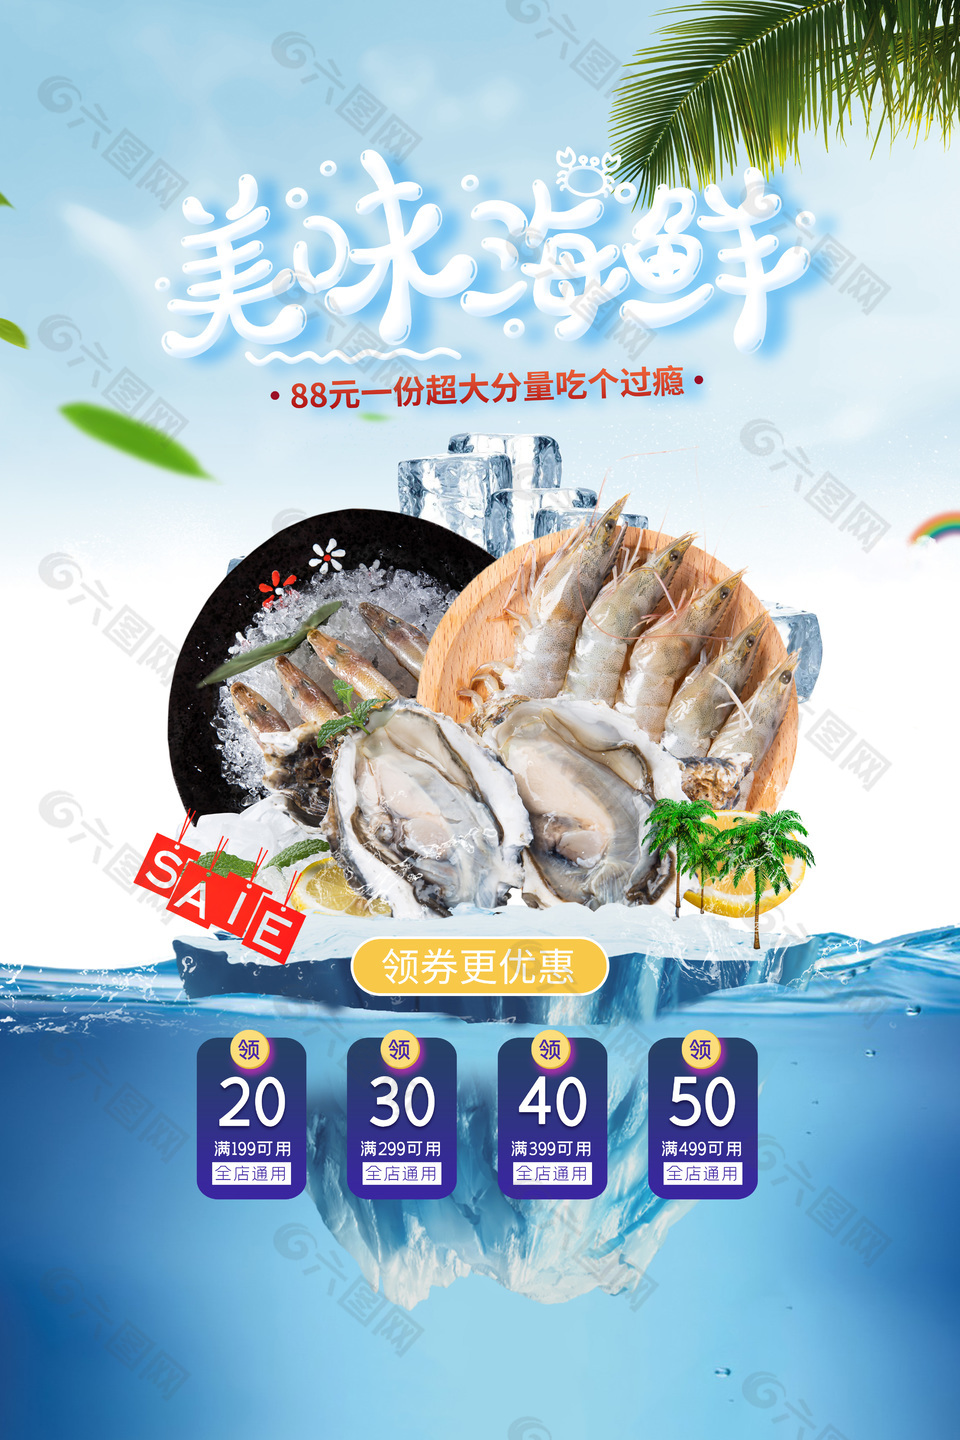 蓝色主题美味海鲜优惠券海报设计